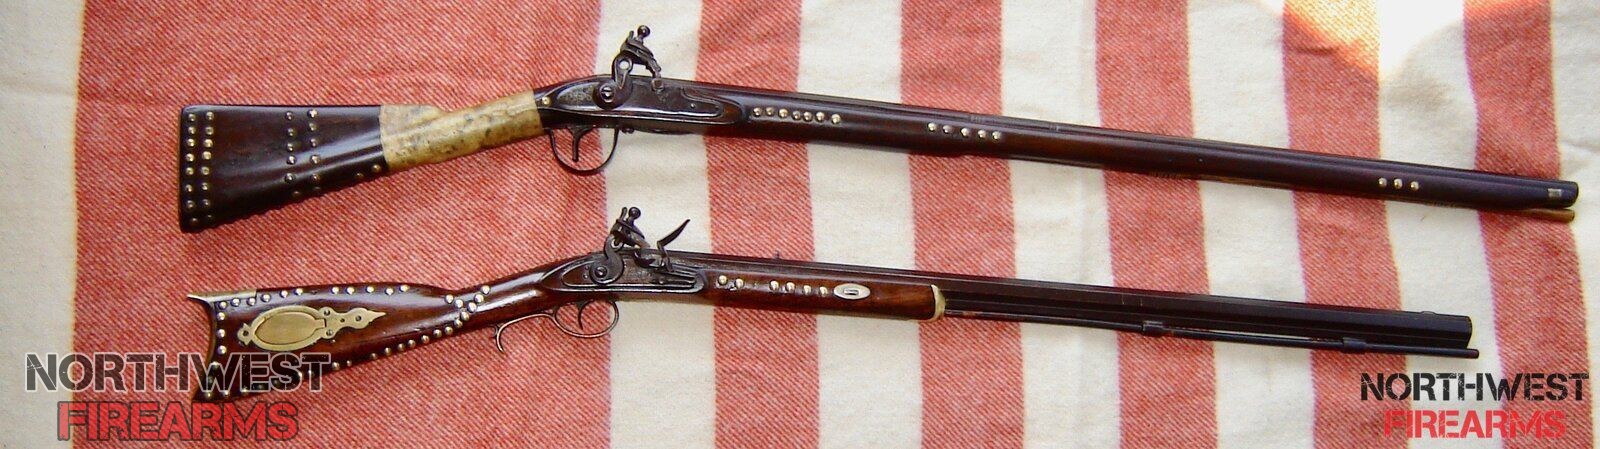 Two "Tacky" guns